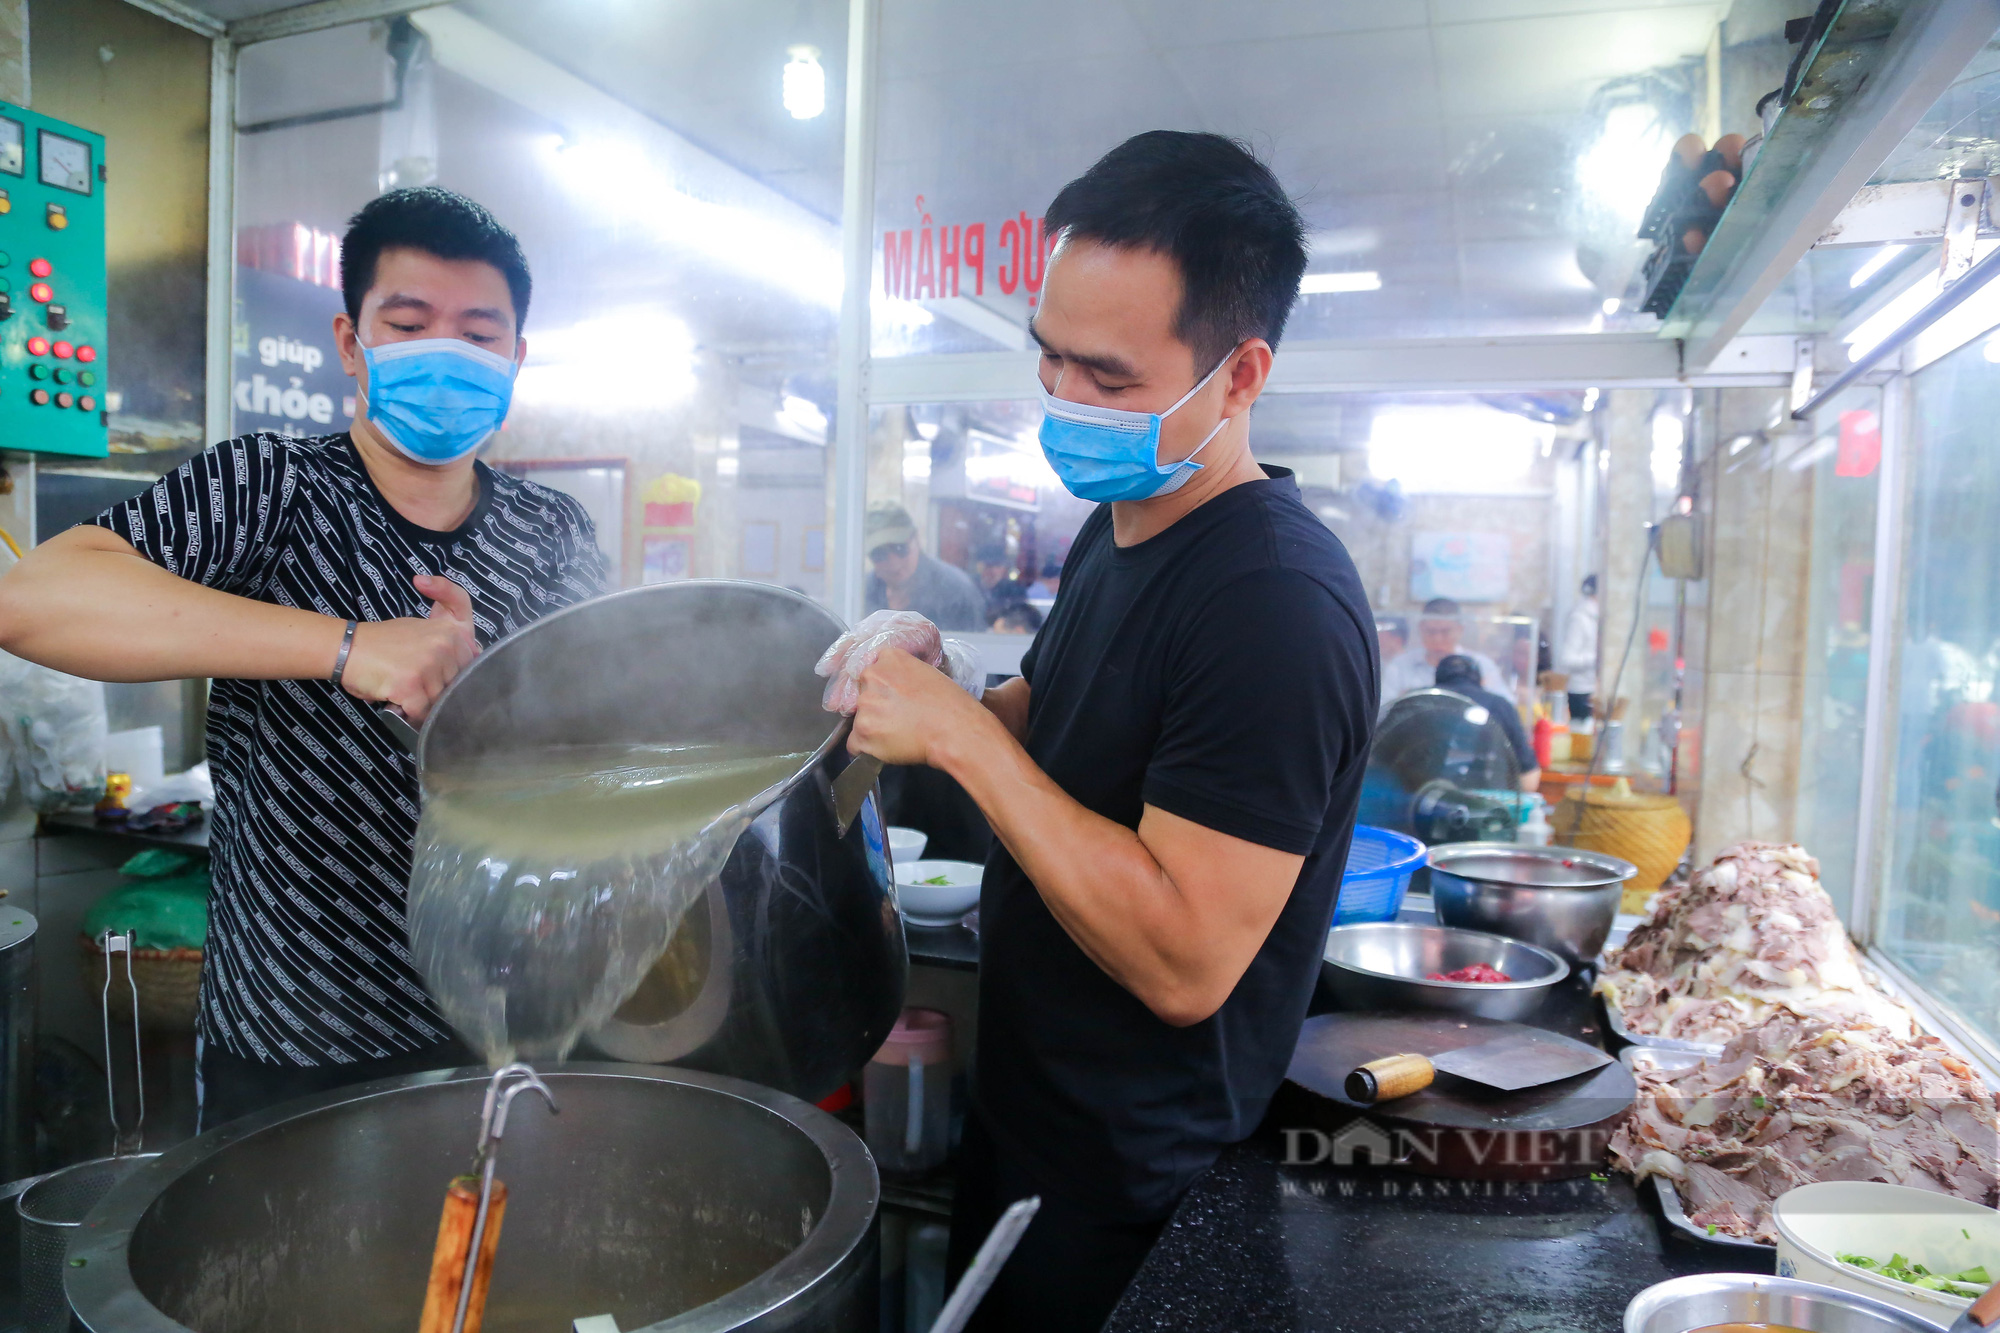 Ảnh ấn tượng tuần: Người Đà Nẵng mặc áo mưa uống cà phê và hình ảnh quán phở bán 1.000 bát trong ngày - Ảnh 4.